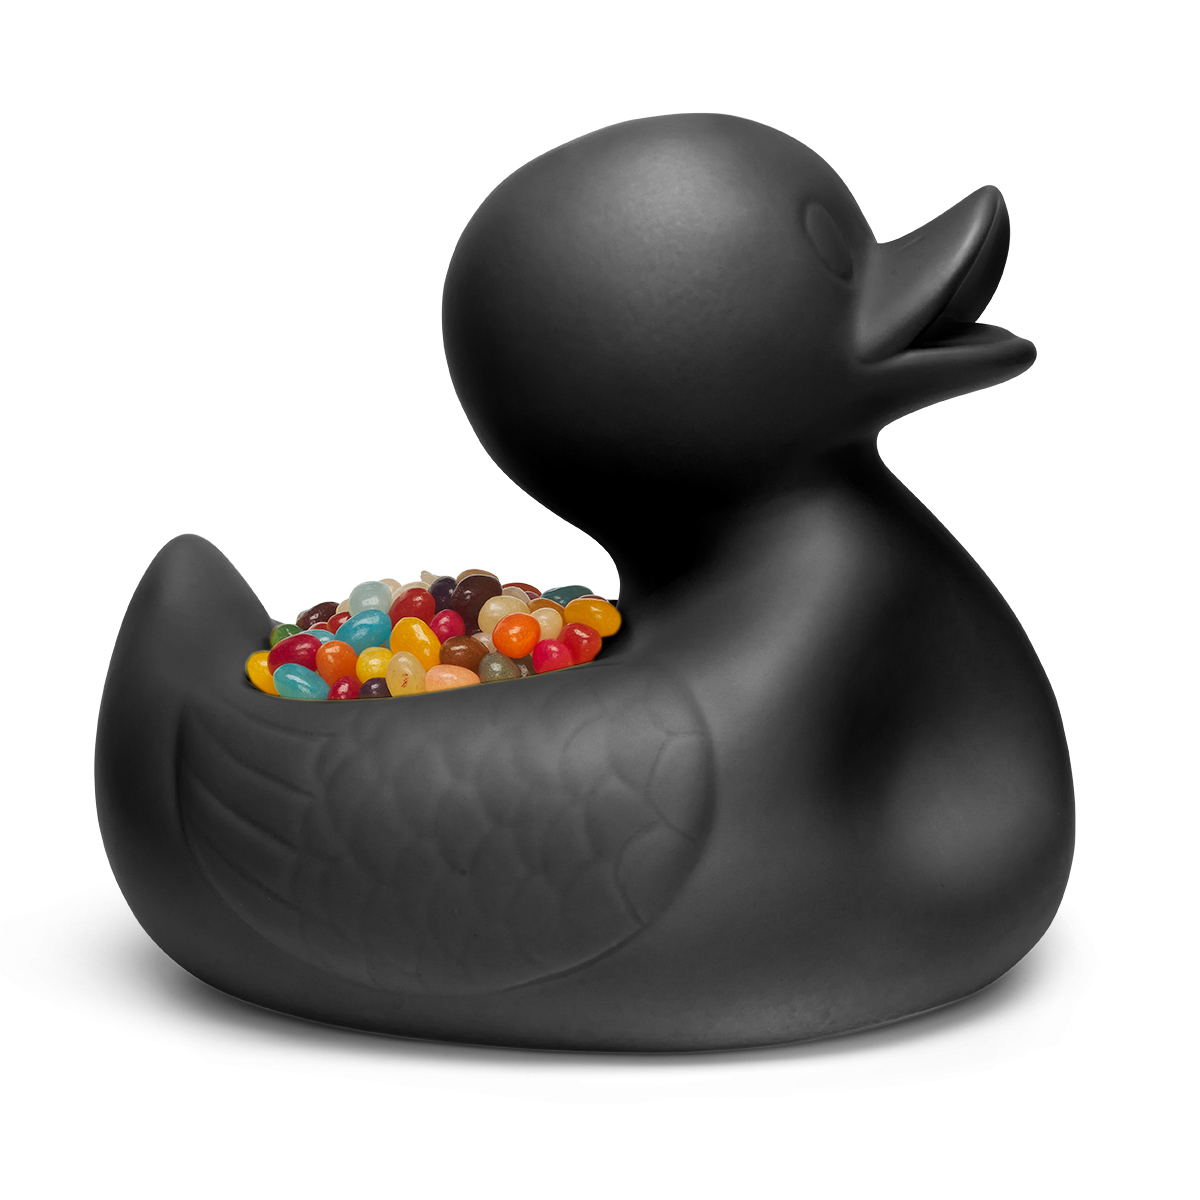 Mr. Ugly Duckling - Black